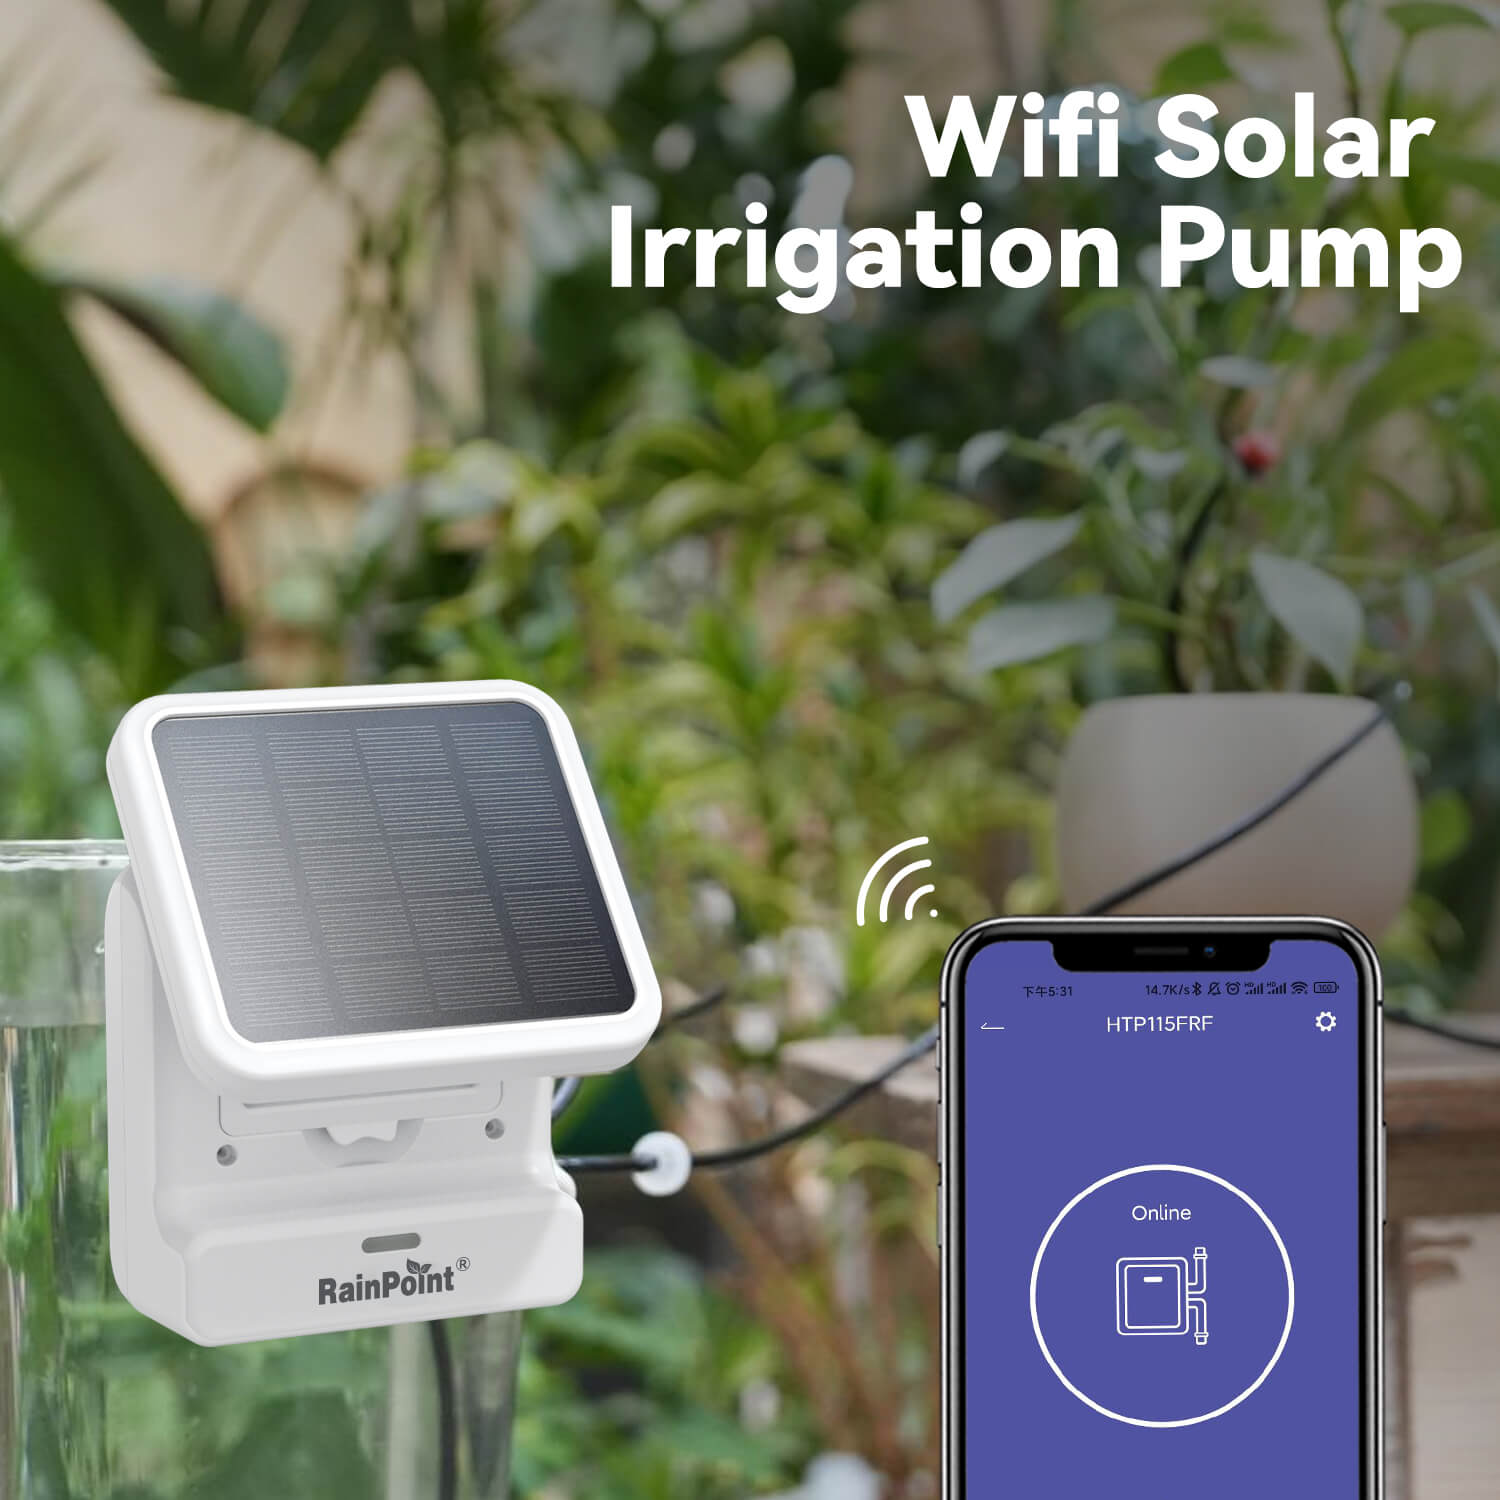 Wifi Solar lrrigation Pump